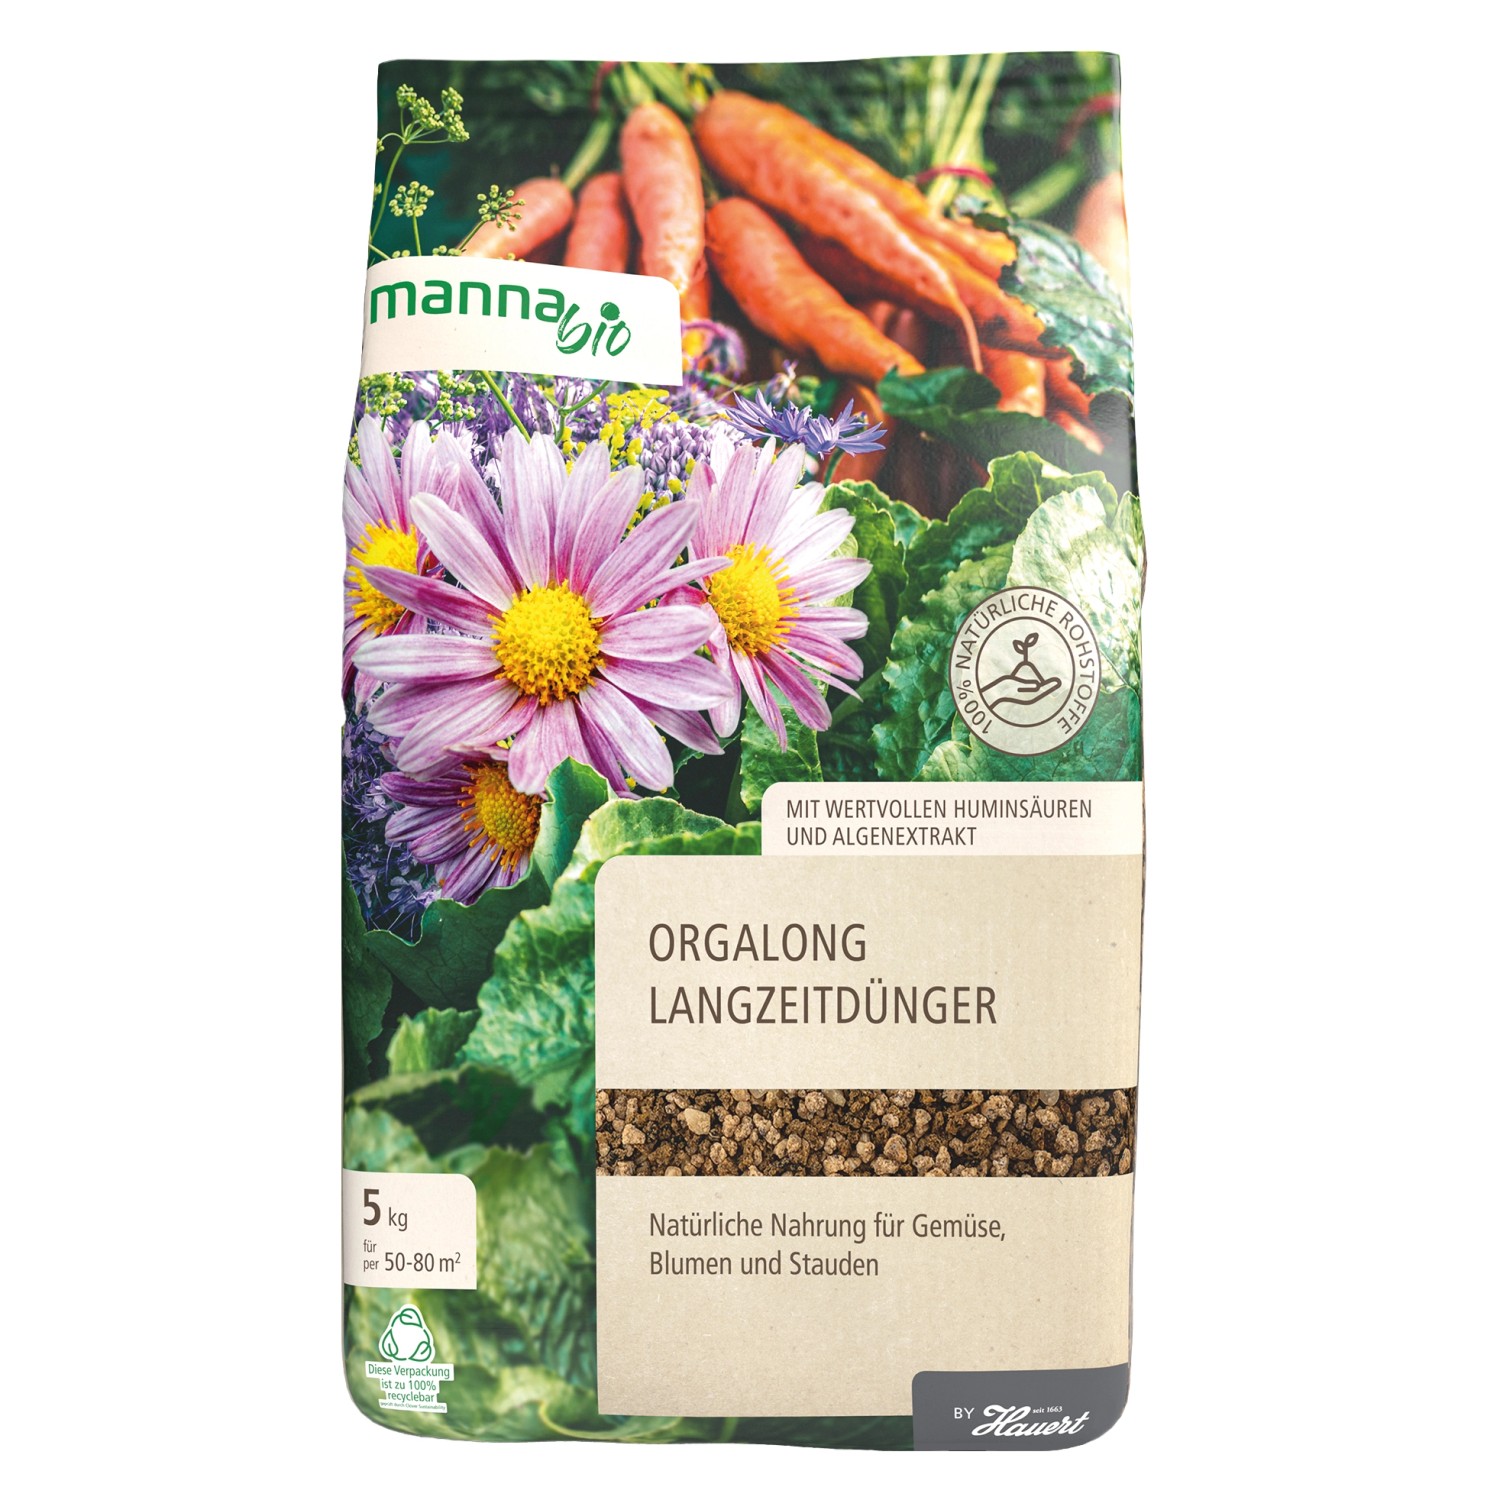 Manna Bio-Langzeitdünger Orgalong 5 kg